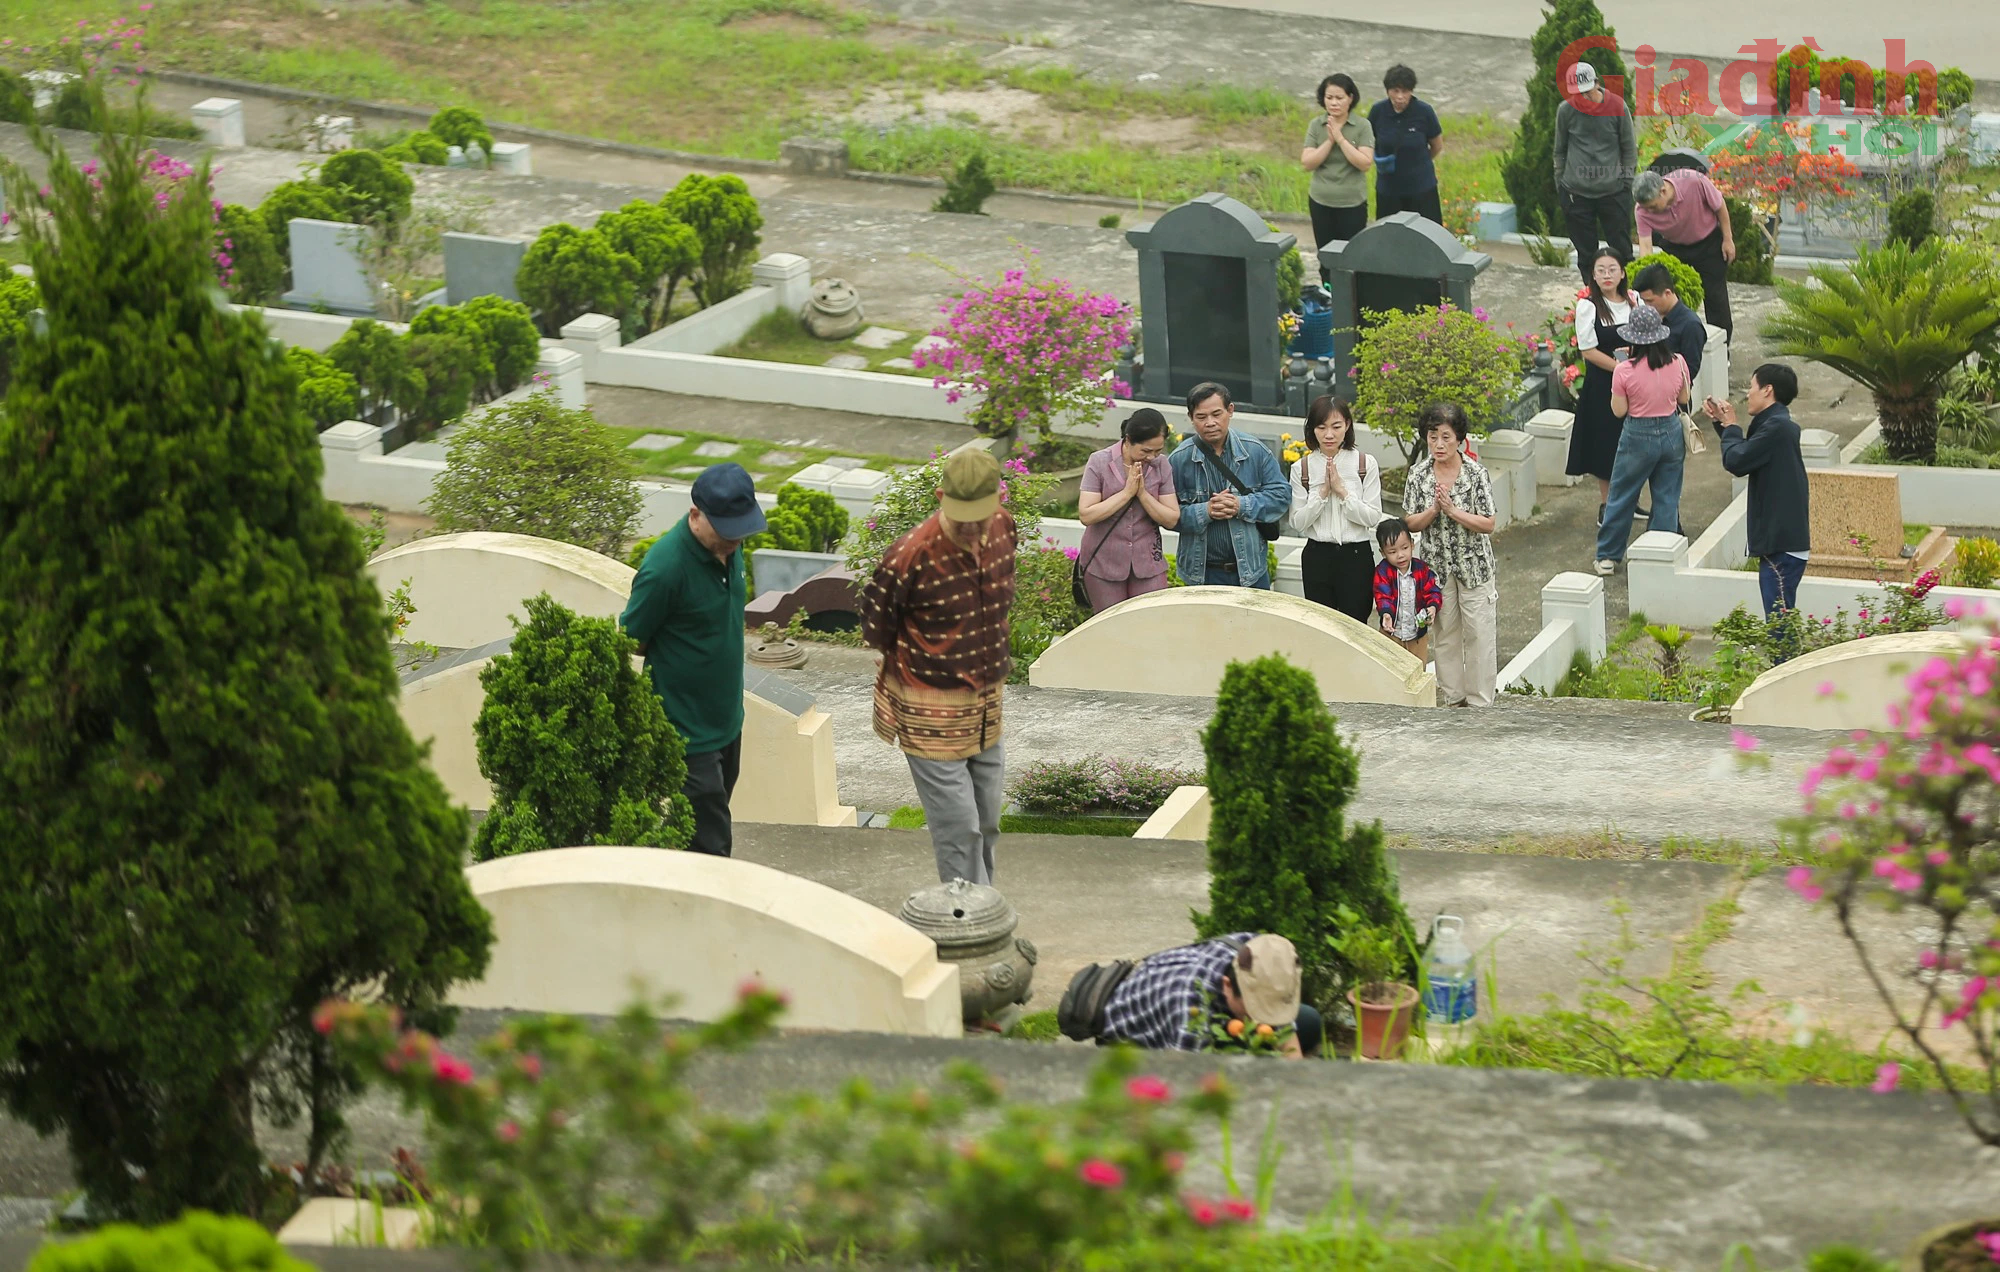 Tranh thủ cuối tuần, người Hà Nội 'tay xách nách mang', ùn ùn đến nghĩa trang để làm lễ Thanh minh - Ảnh 11.